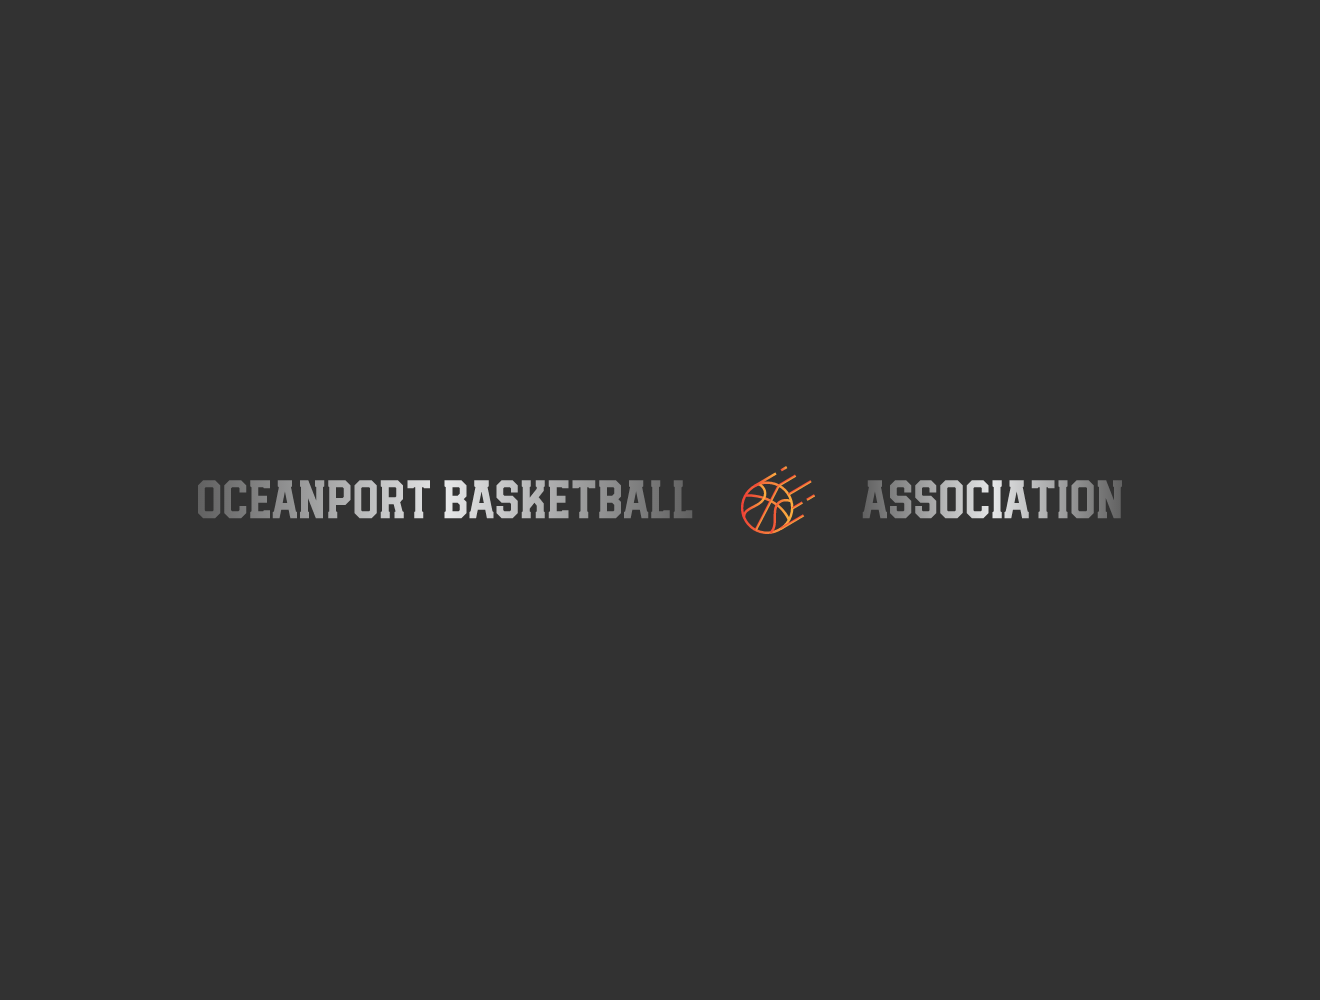 Oceanport Basketball Association